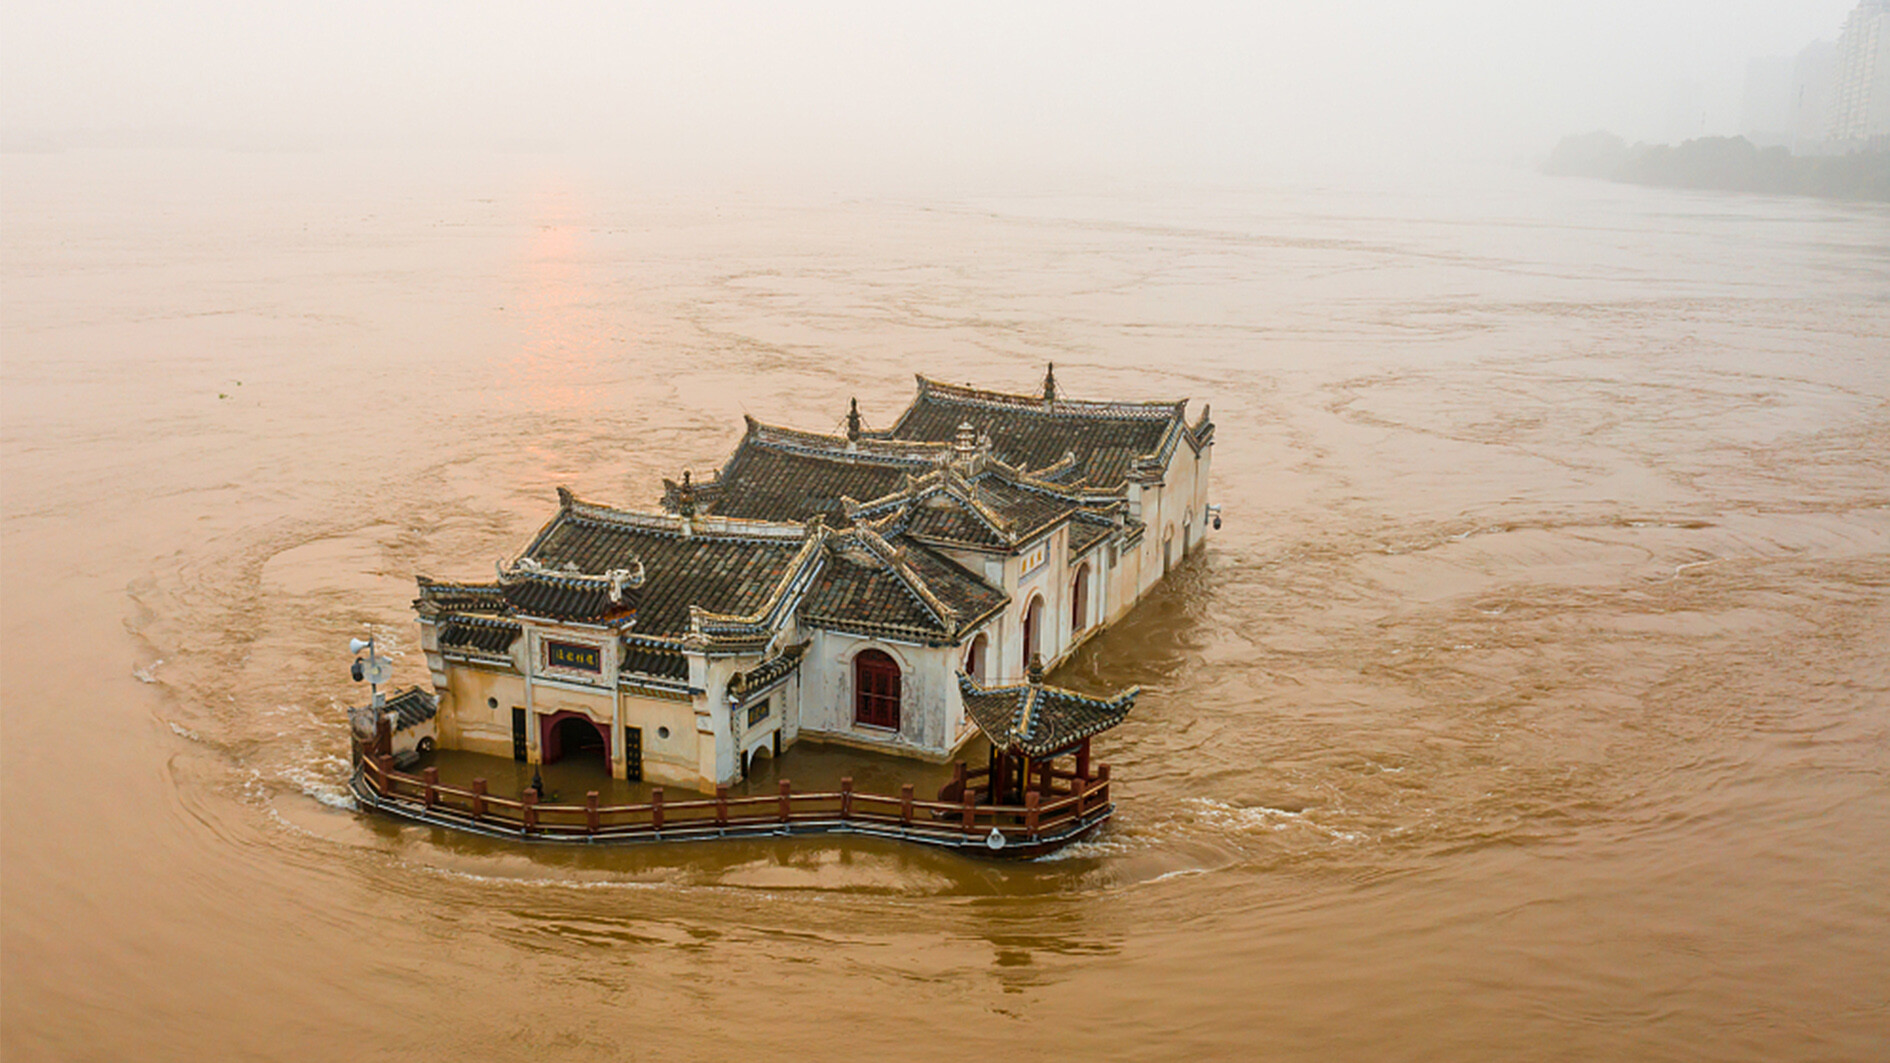 بنای چینی 700 سال شناور روی رودخانه